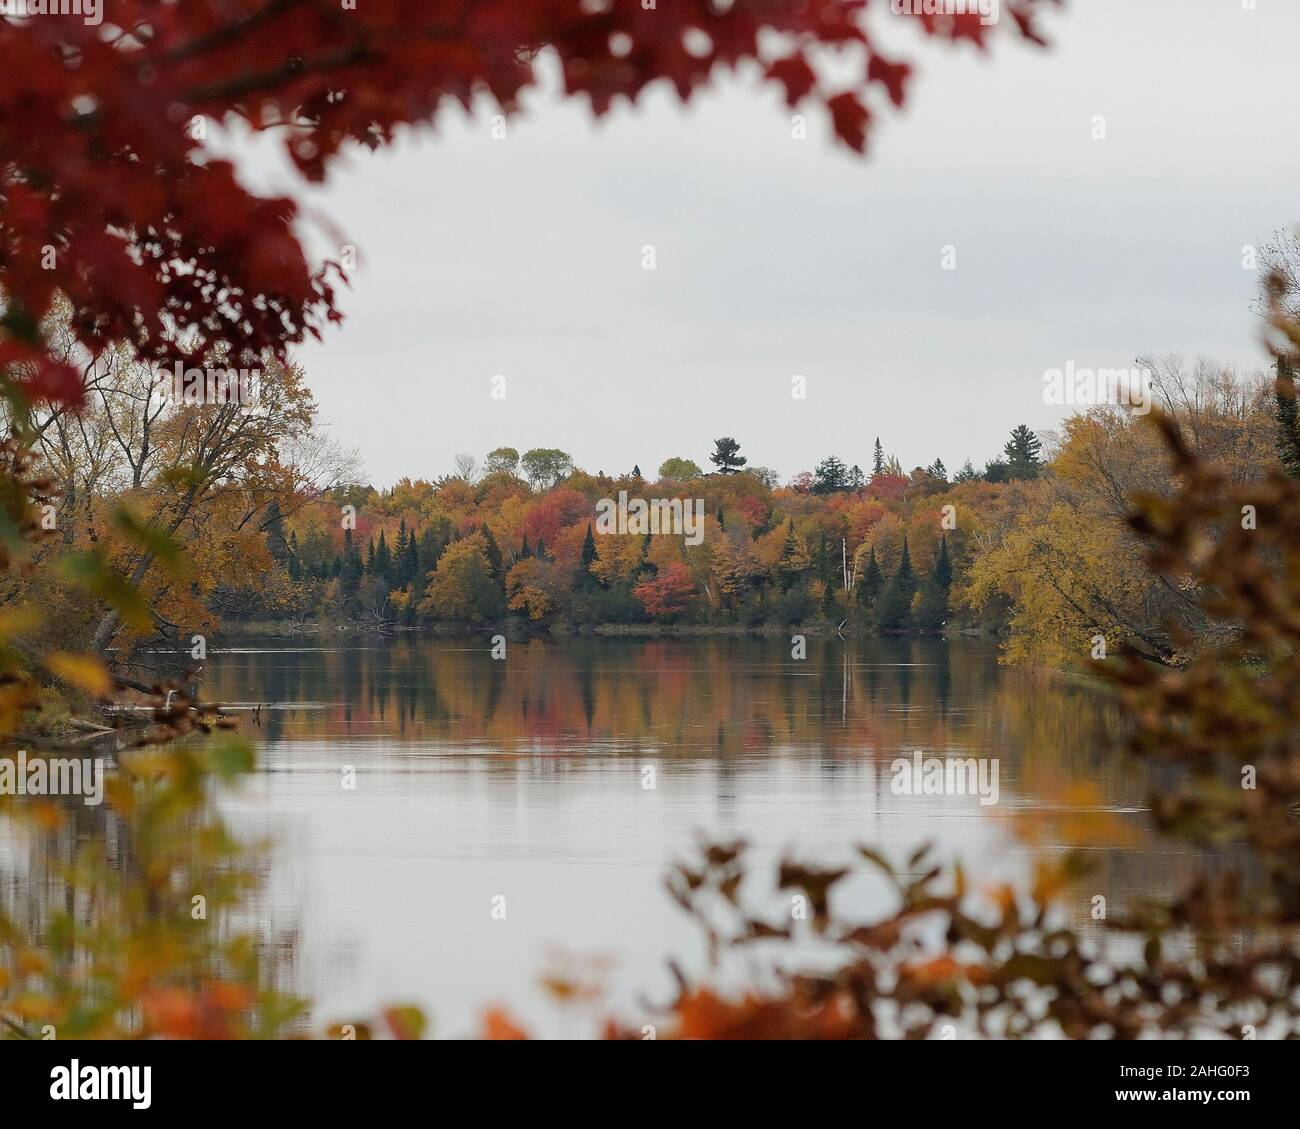 Décor de l'automne montrant rivière entourée d'arbres. Paysage d'automne colorés avec scène montrant la nature de la rivière, le ciel, les nuages avec un foregr feuillage Banque D'Images